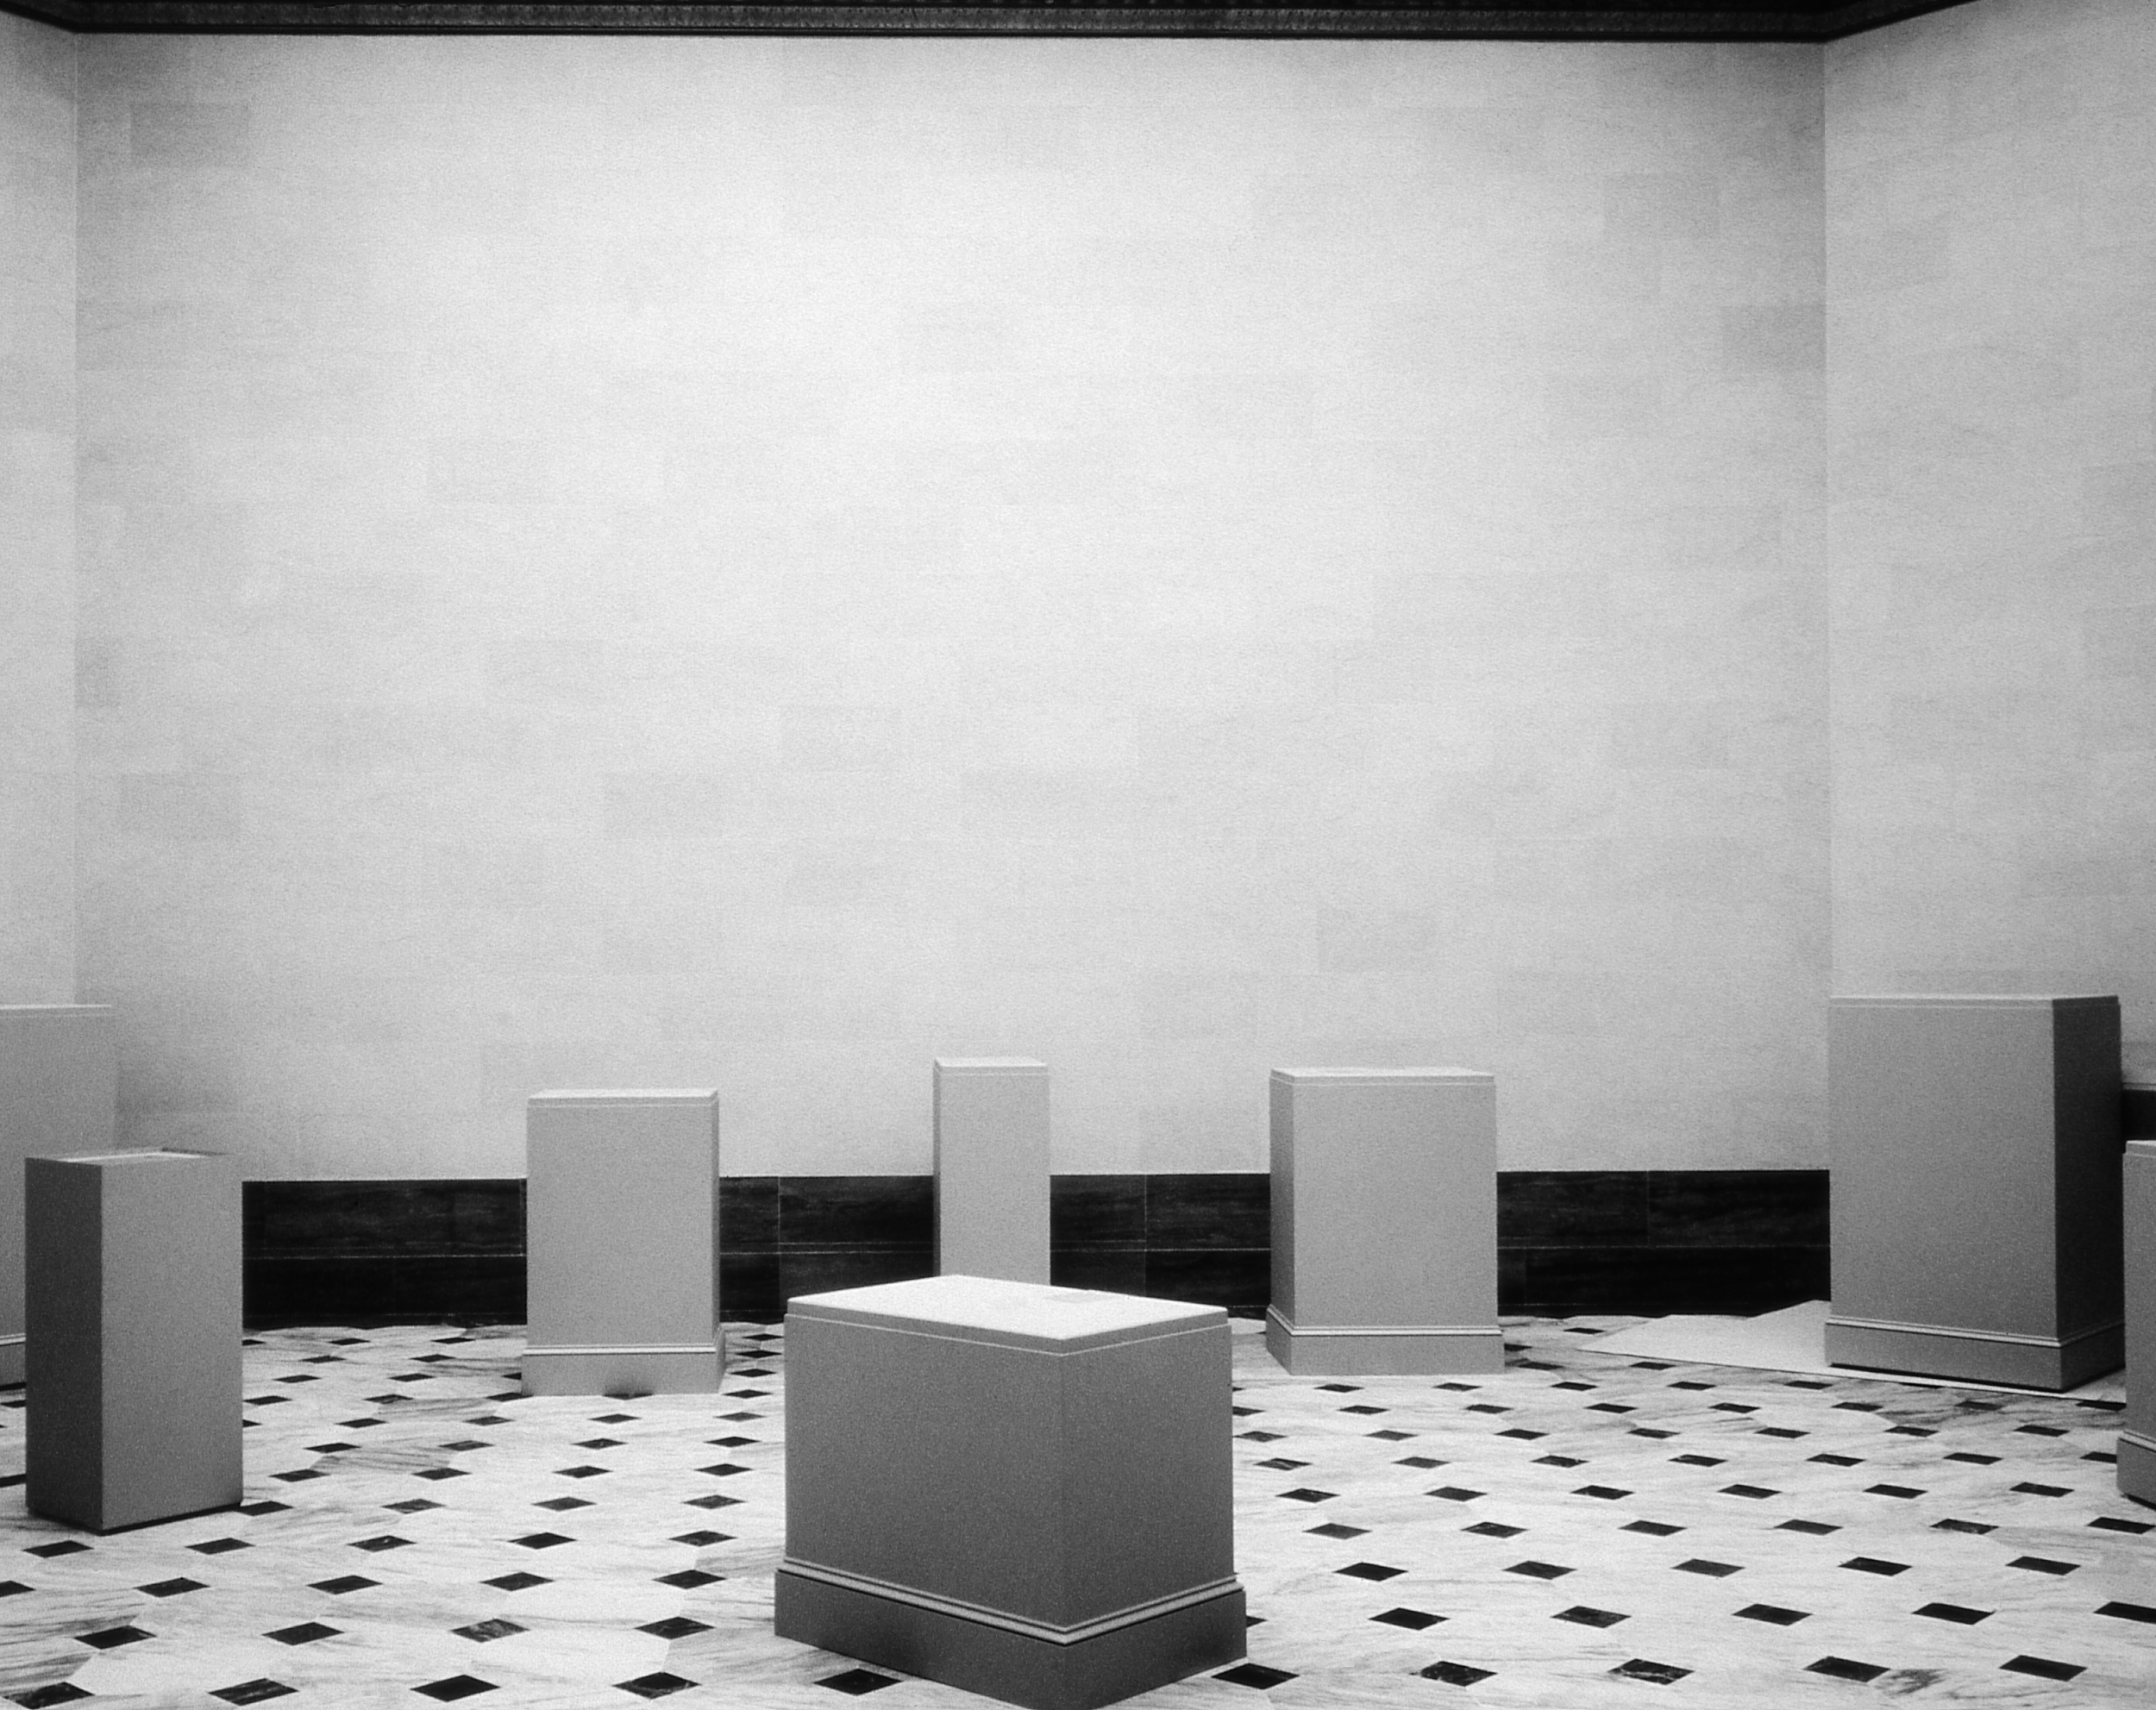  Pedestals, Installation View, 1995 